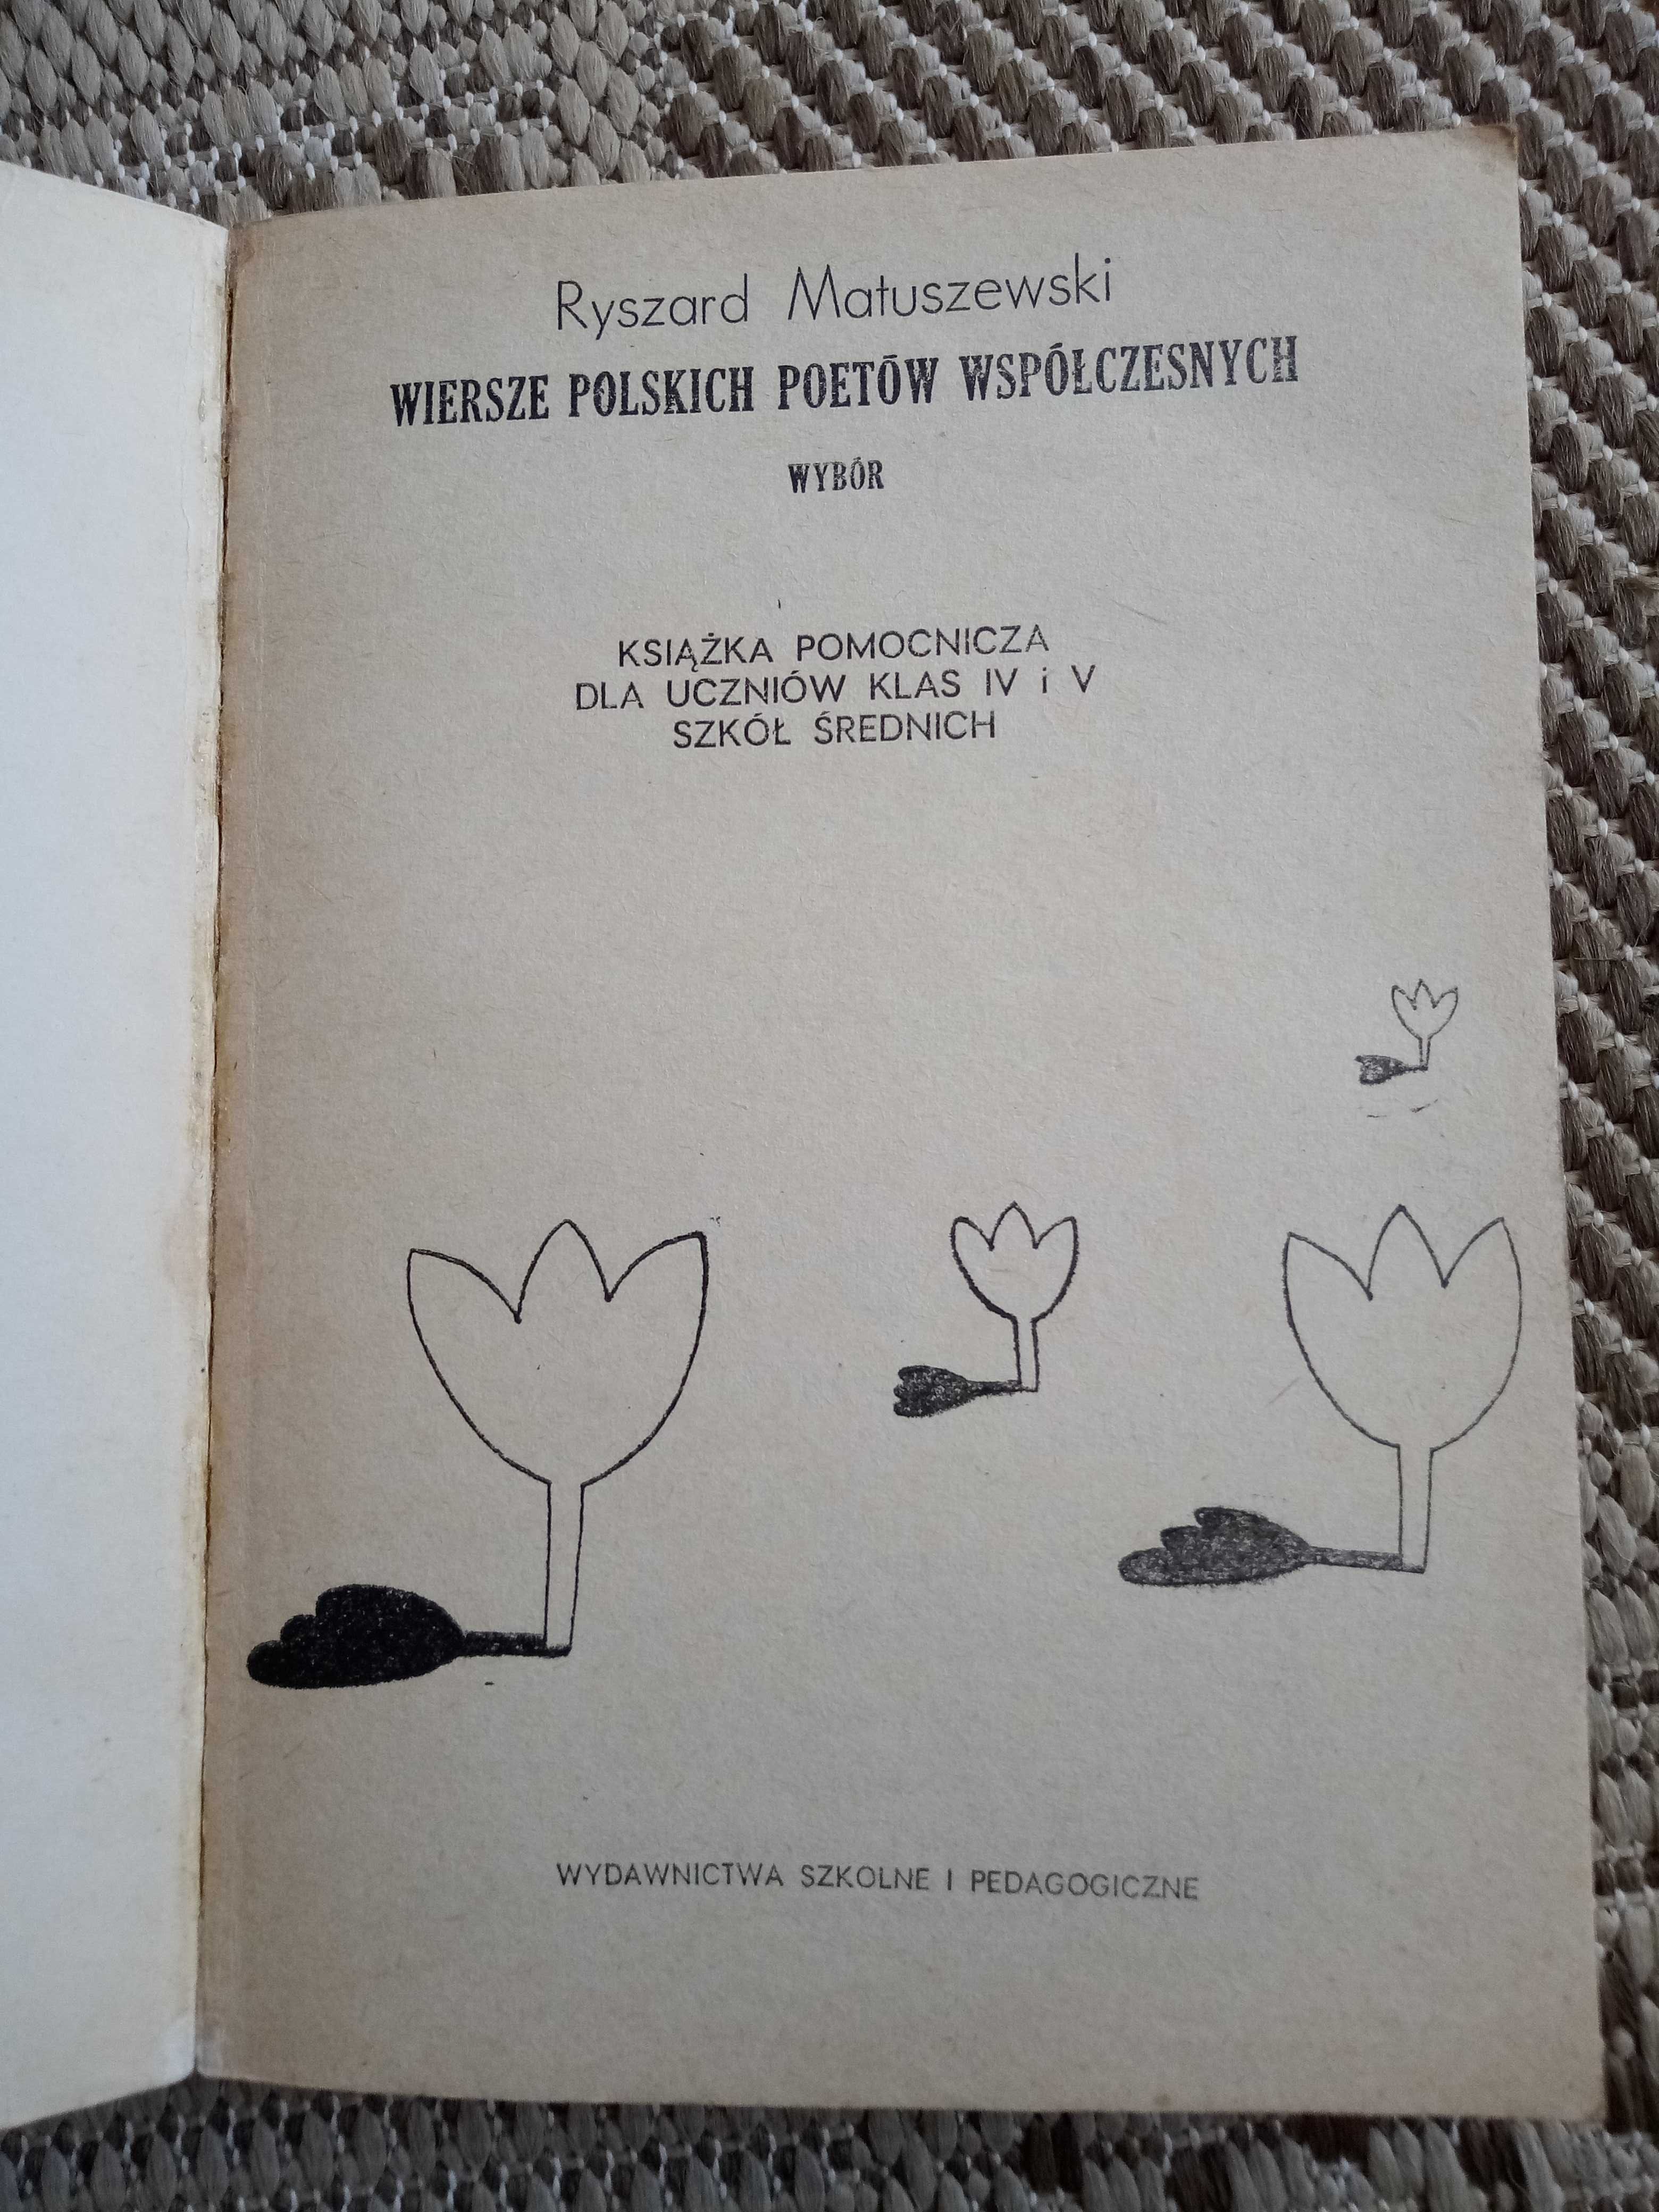 Wiersze Polskich Poetów Współczesnych Ryszard Matuszewski 1984 WSiP